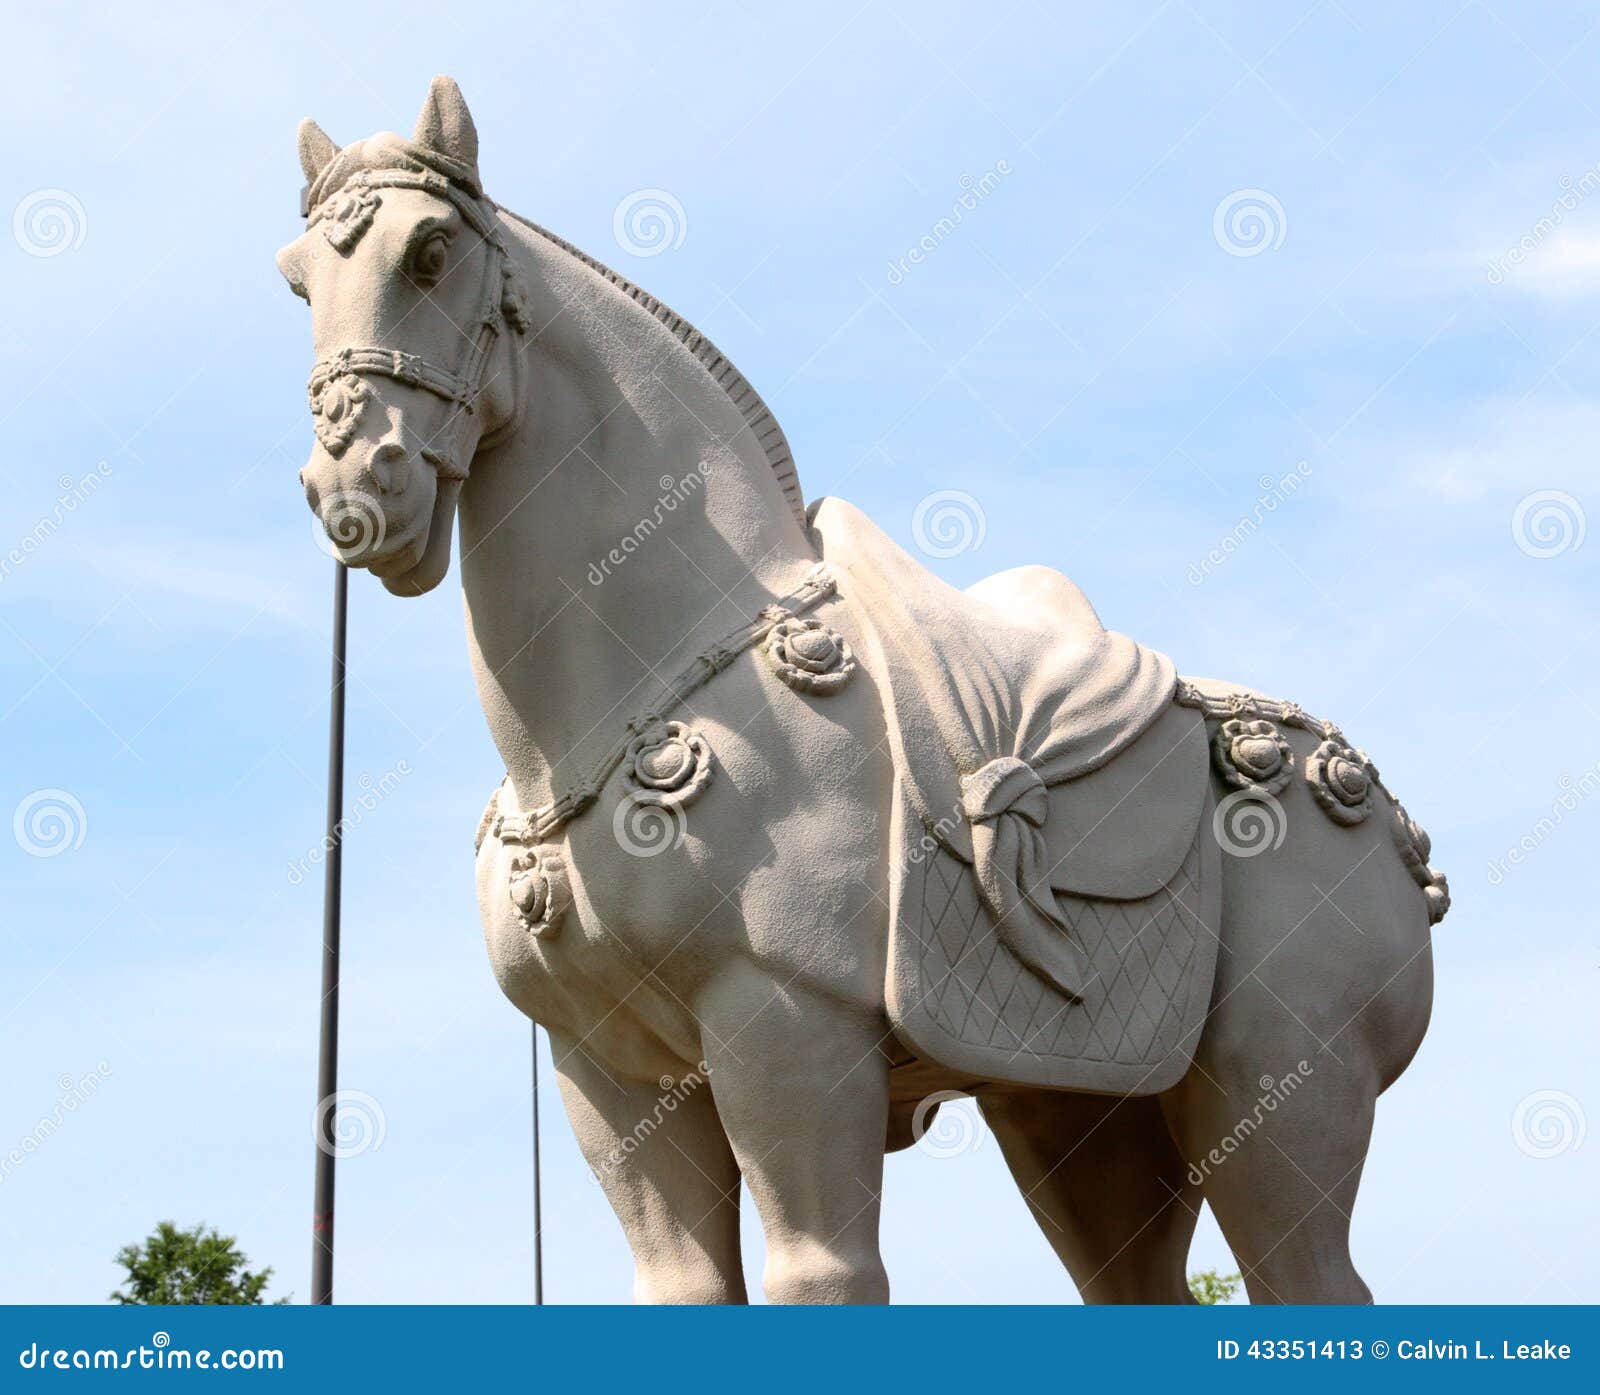 Kamienna Wojennego konia statua w Średniowiecznej regalii. Majestatyczna i dumna statua średniowieczny wojenny koń